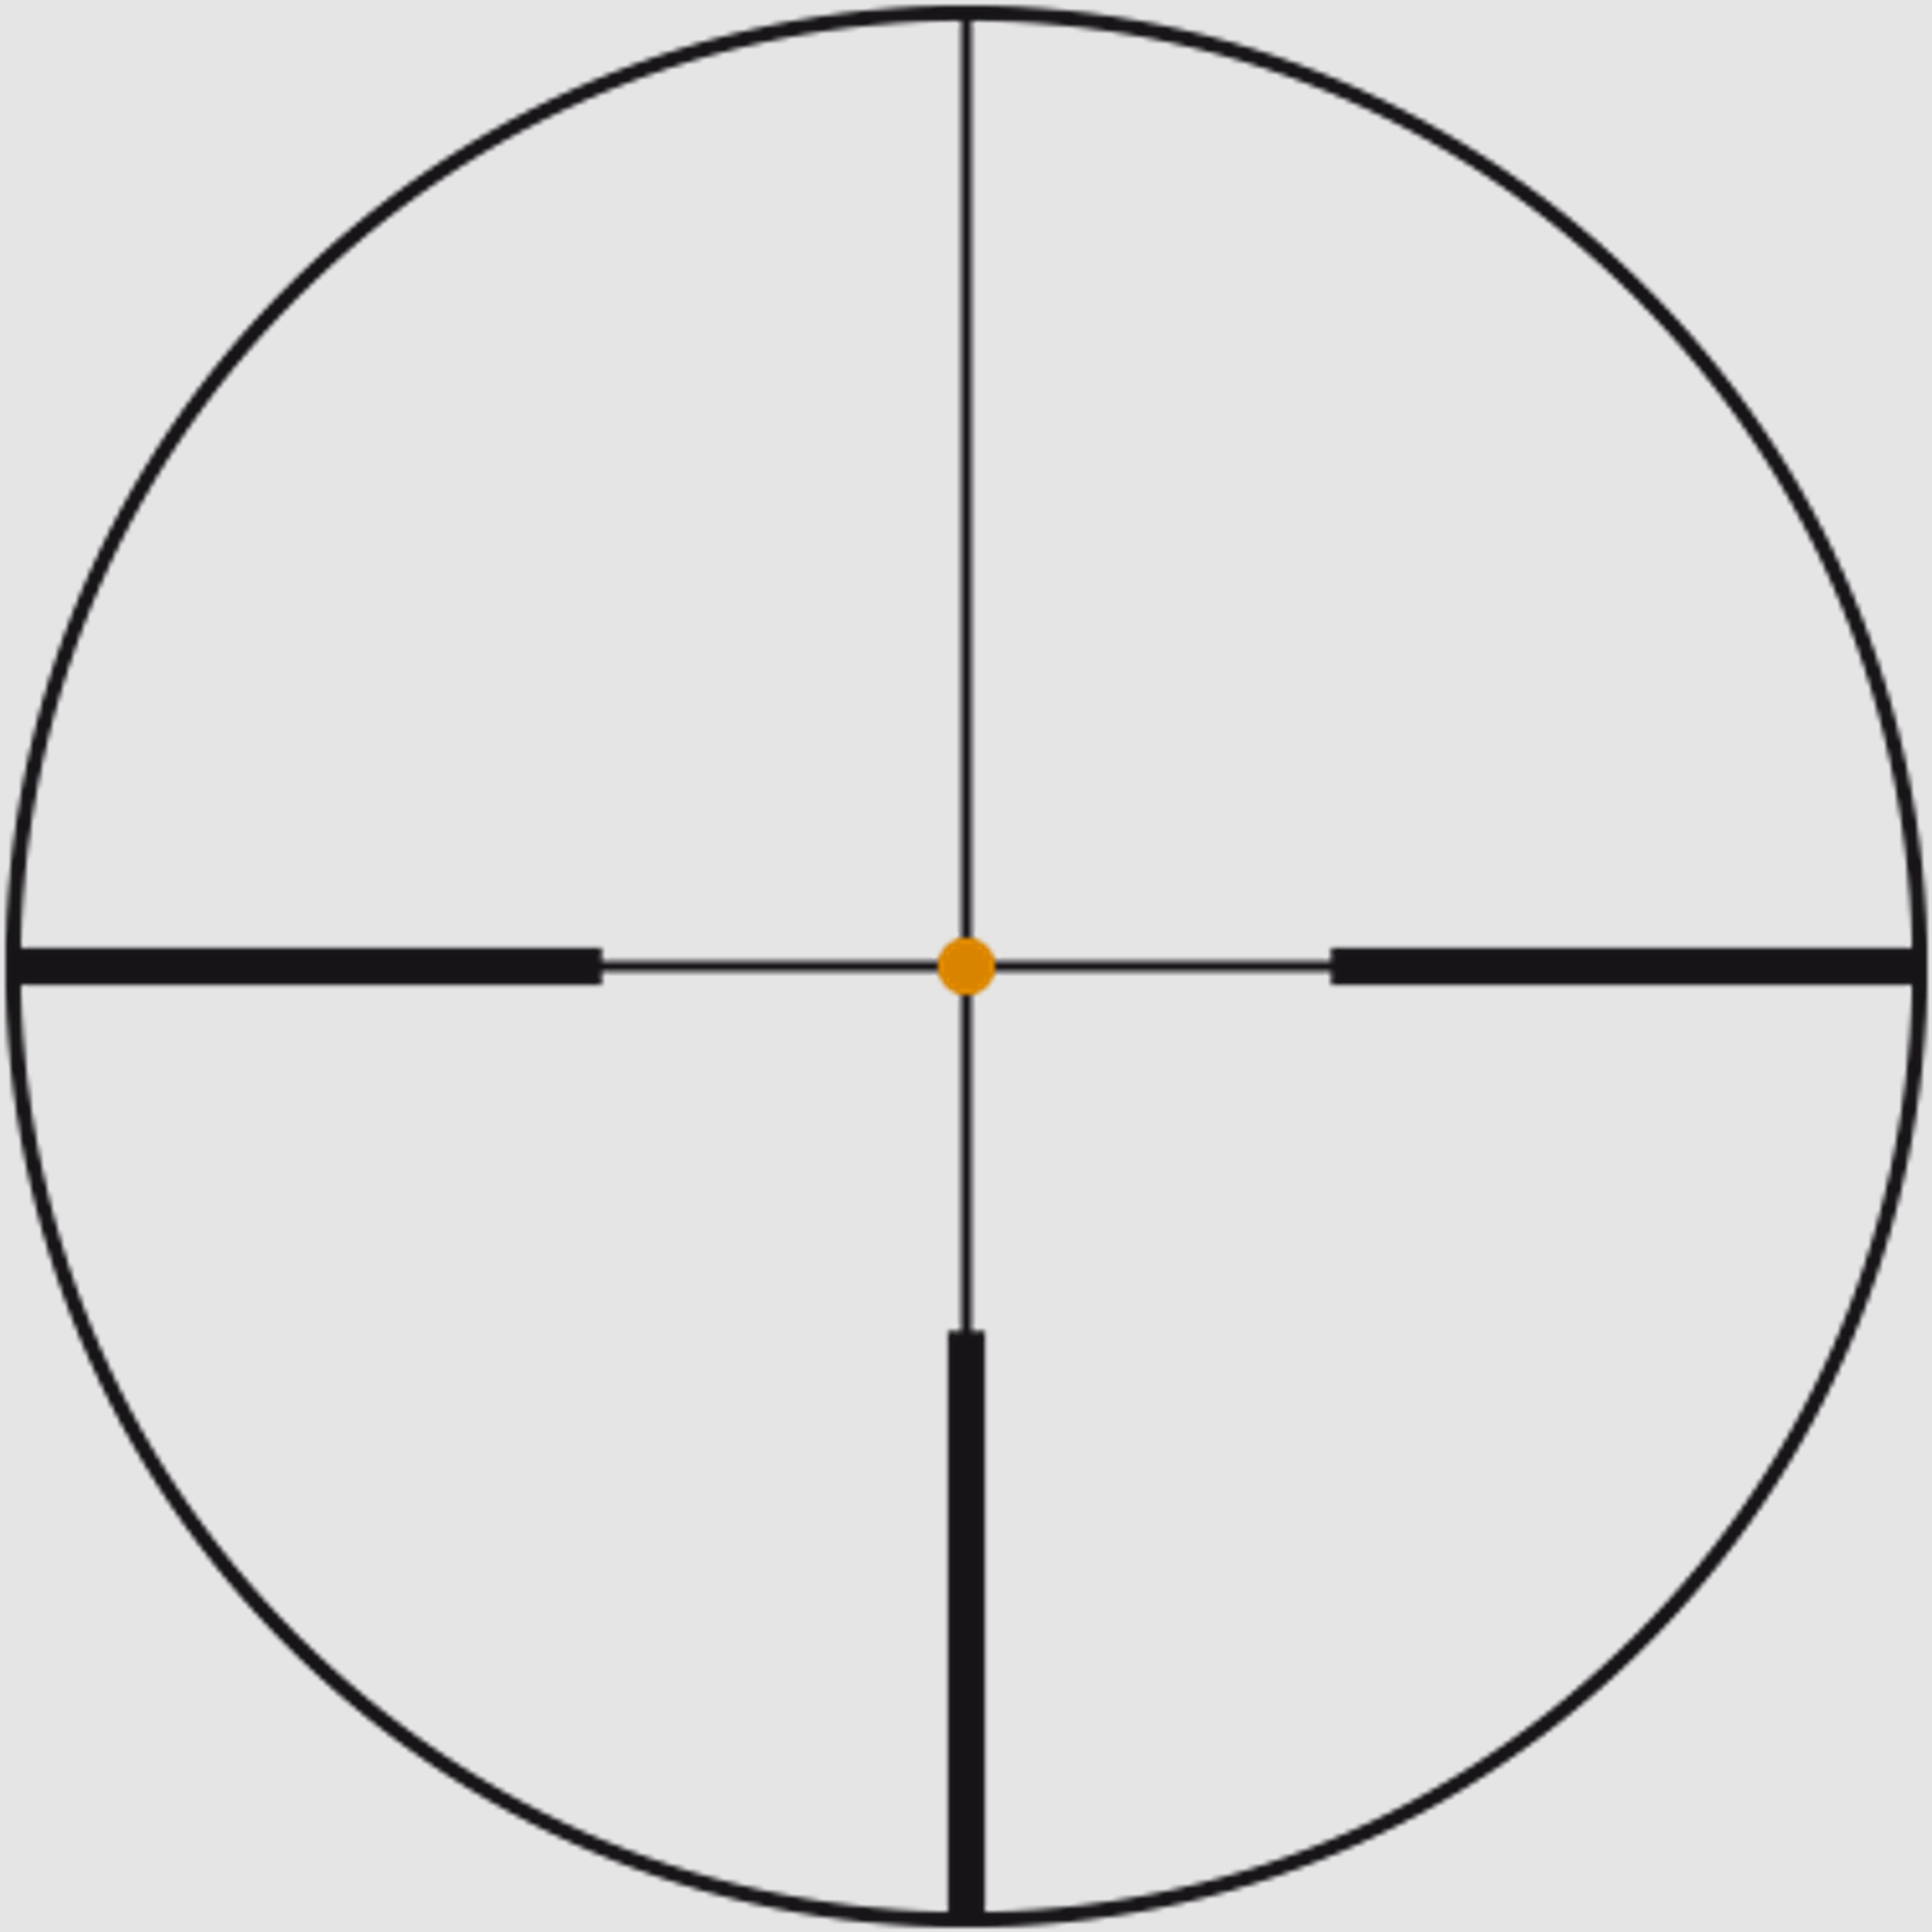 SWAROVSKI Zielfernrohr mit Leuchtabsehen 2,5-15x44 P BT Z6i L (30mm) II Abs. 4A-I